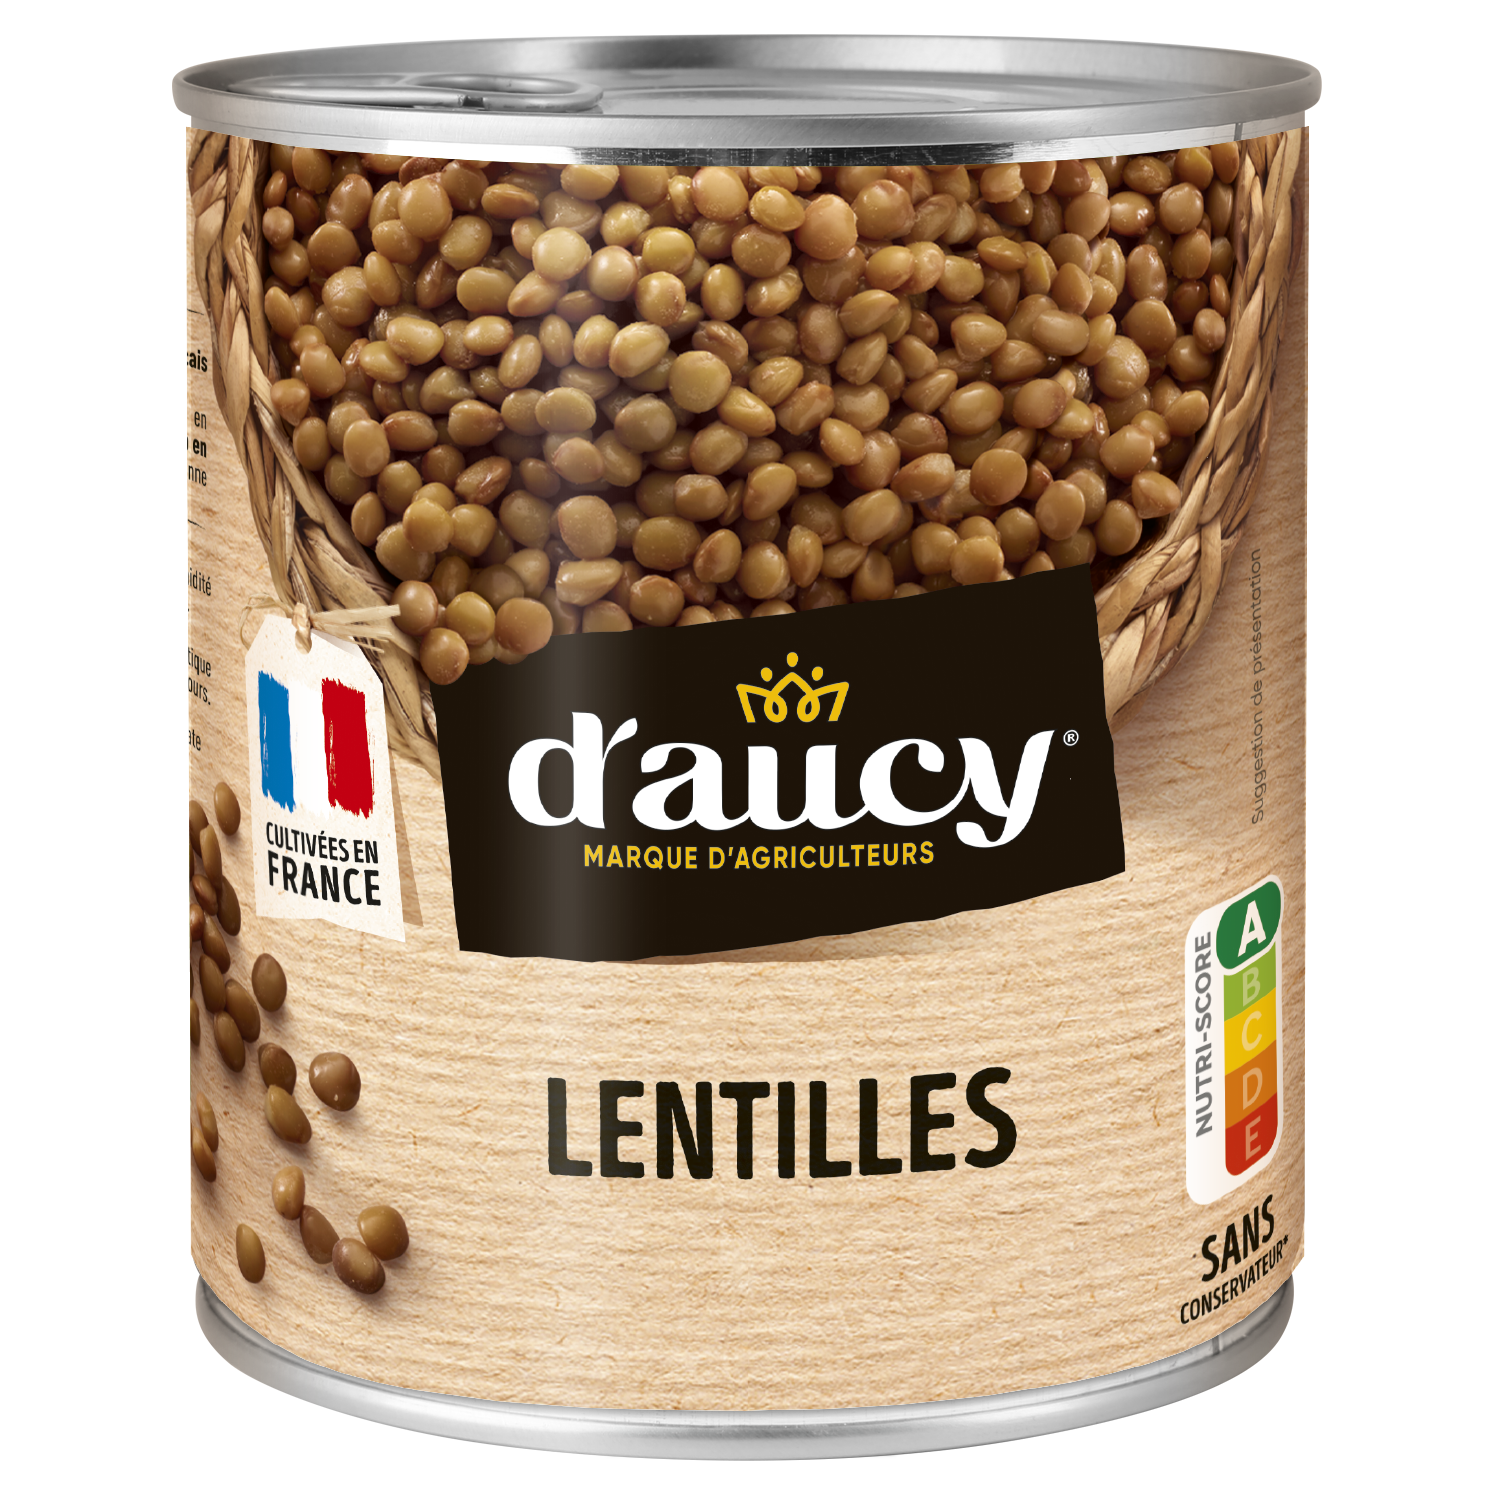 Lentilles - d'aucy